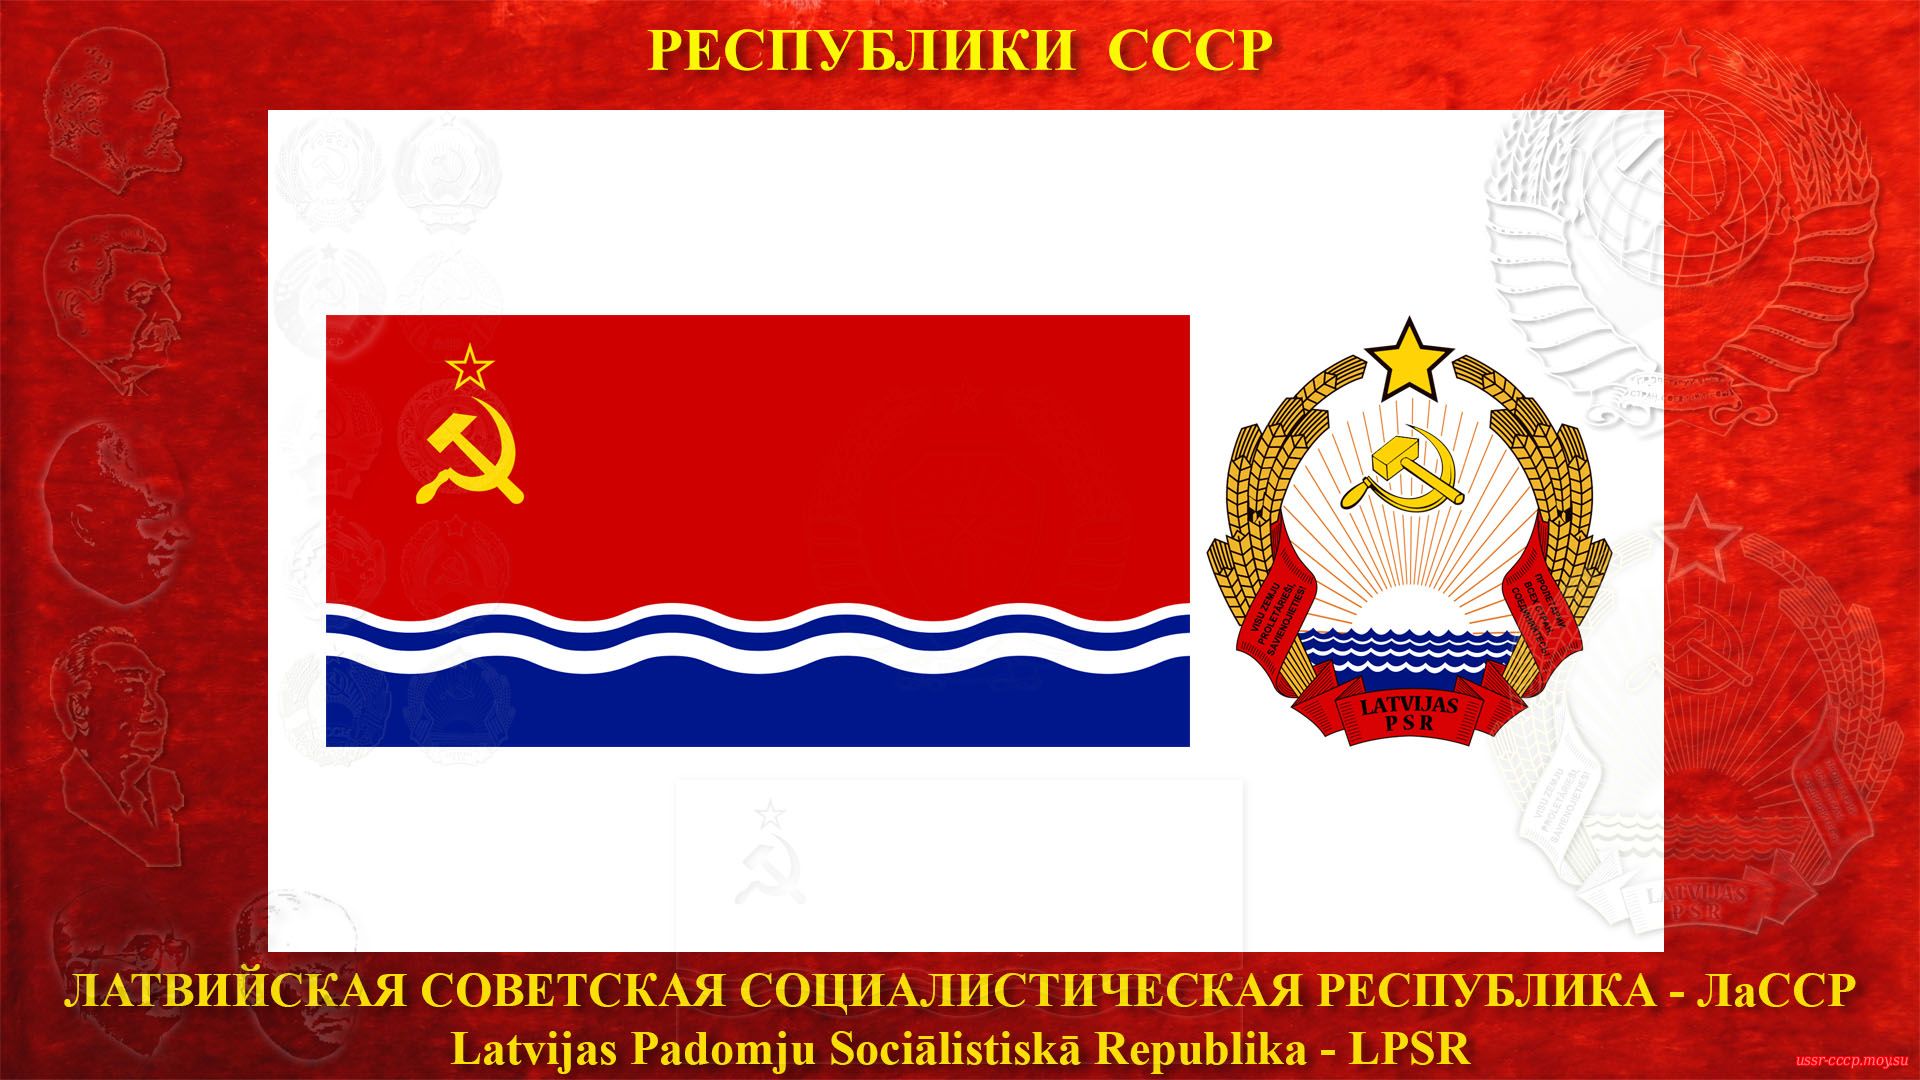 ЛаССР — Латвийская Советская Социалистическая Республика (05.08.1940 — де-юре)